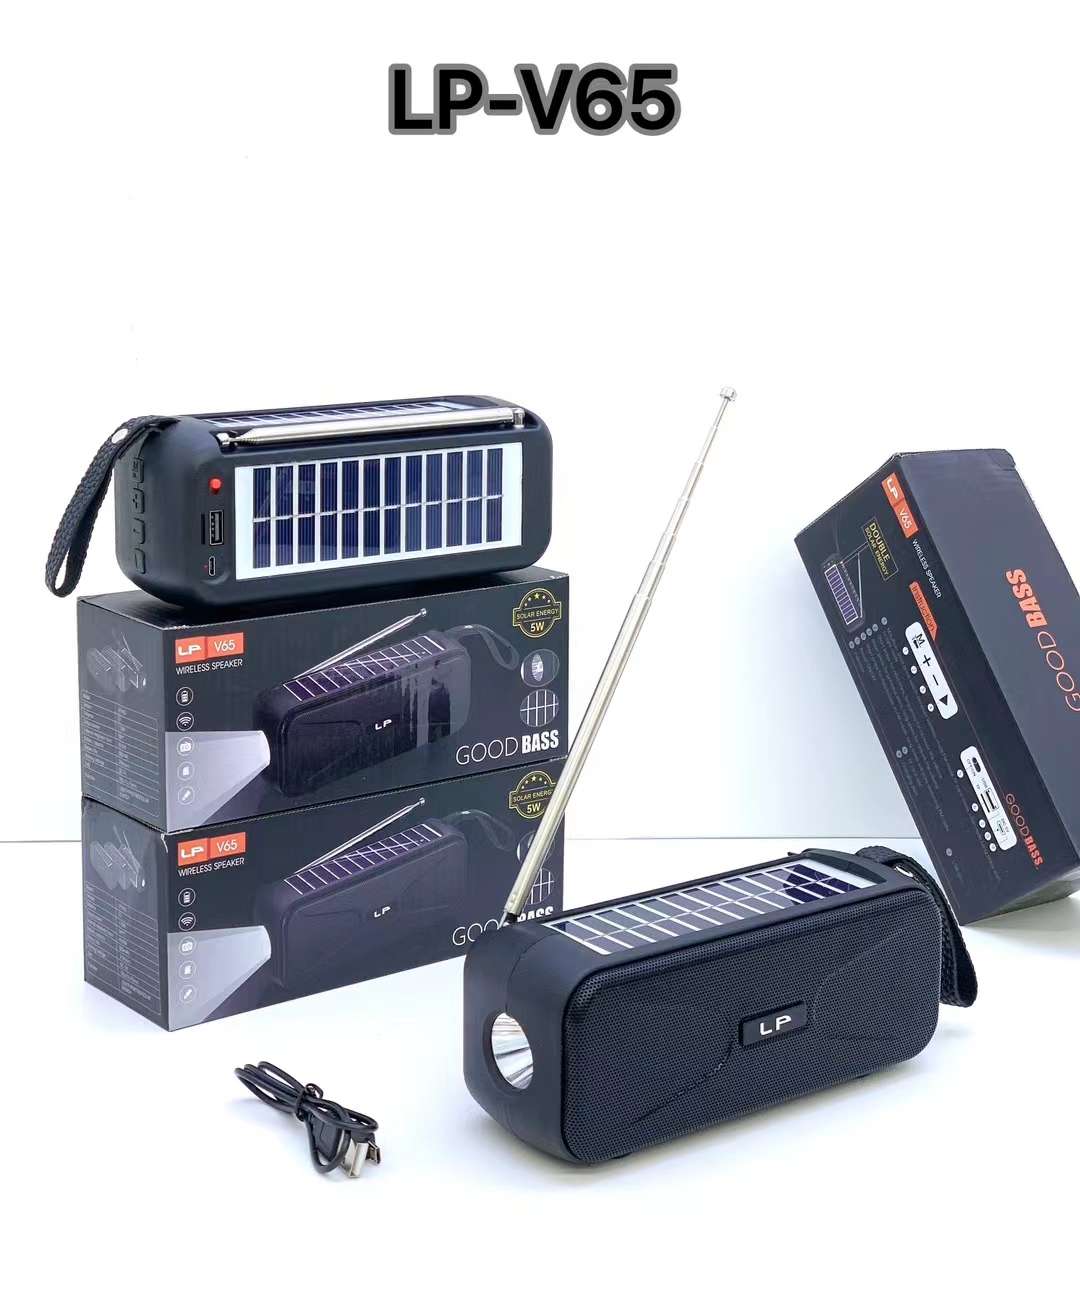 双太阳能板蓝牙音箱LP一V65带手电筒收音机可插U盘TF卡